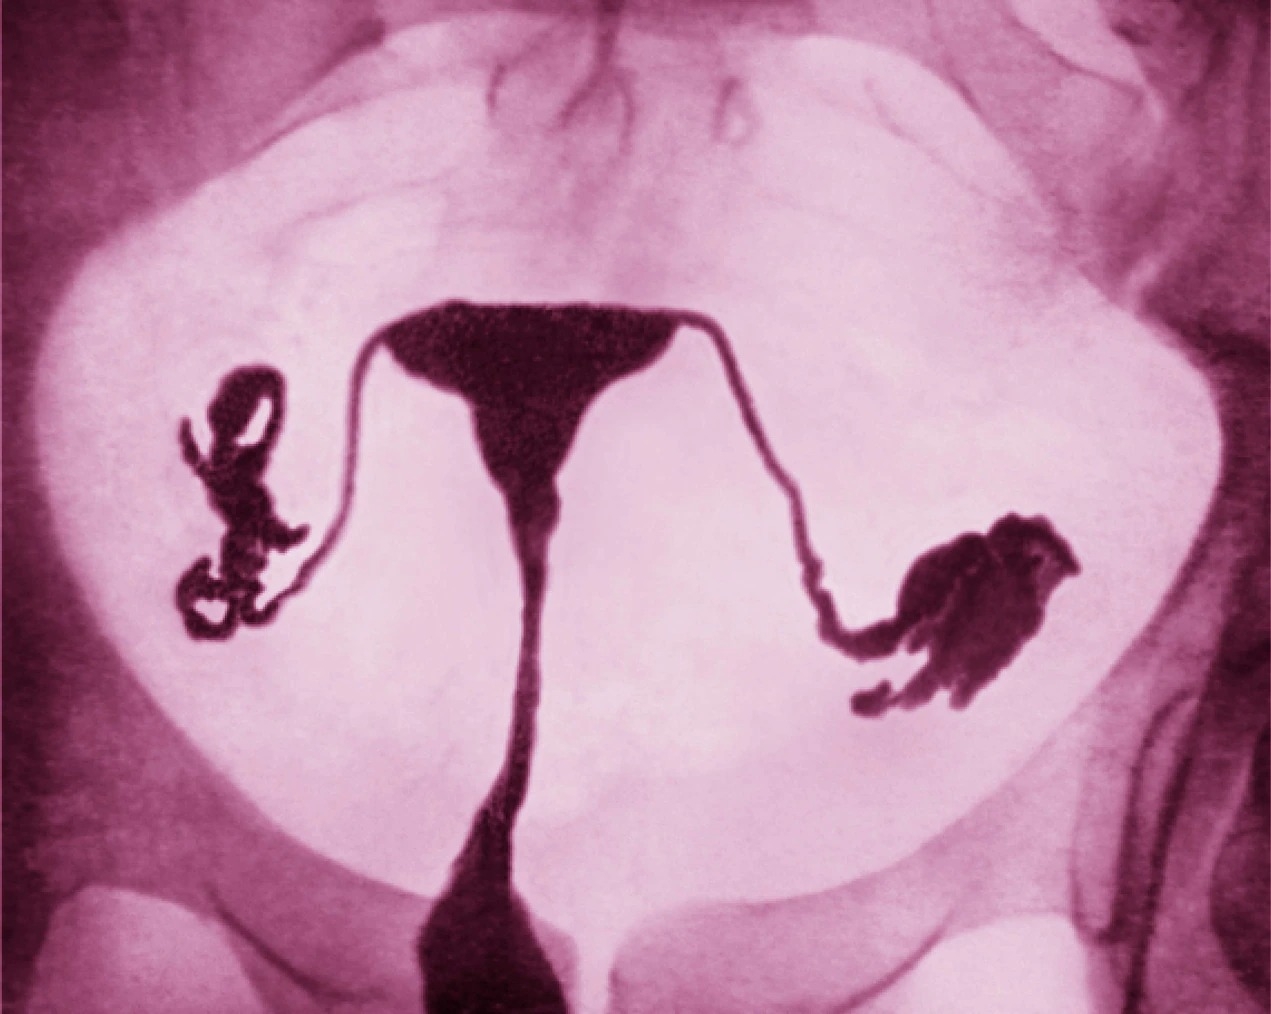 這張色彩增強子宮輸卵管攝影顯示女性生殖系統，包含輸卵管和健康的子宮。PHOTOGRAPH BY JAMES CAVALLINI, SCIENCE SOURCE